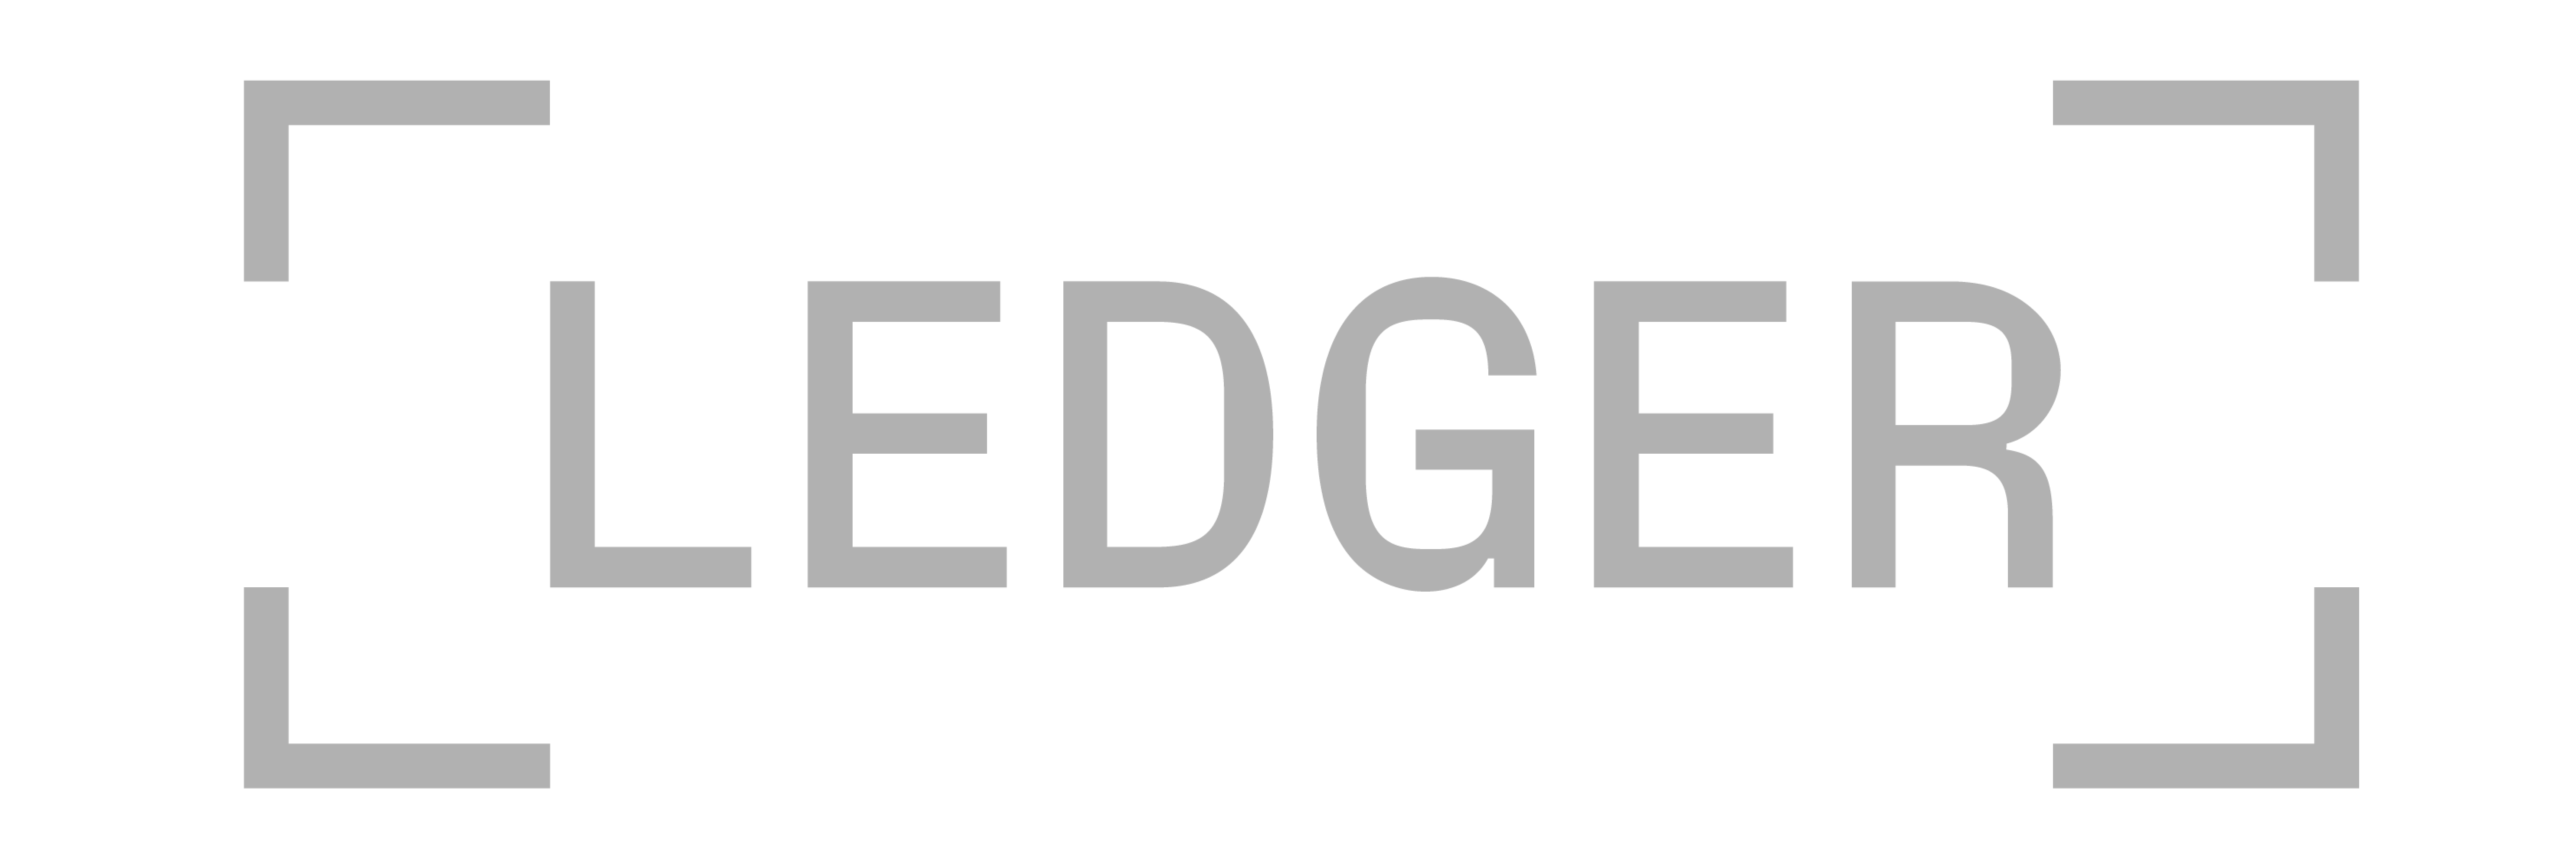 Ledger logo maintners